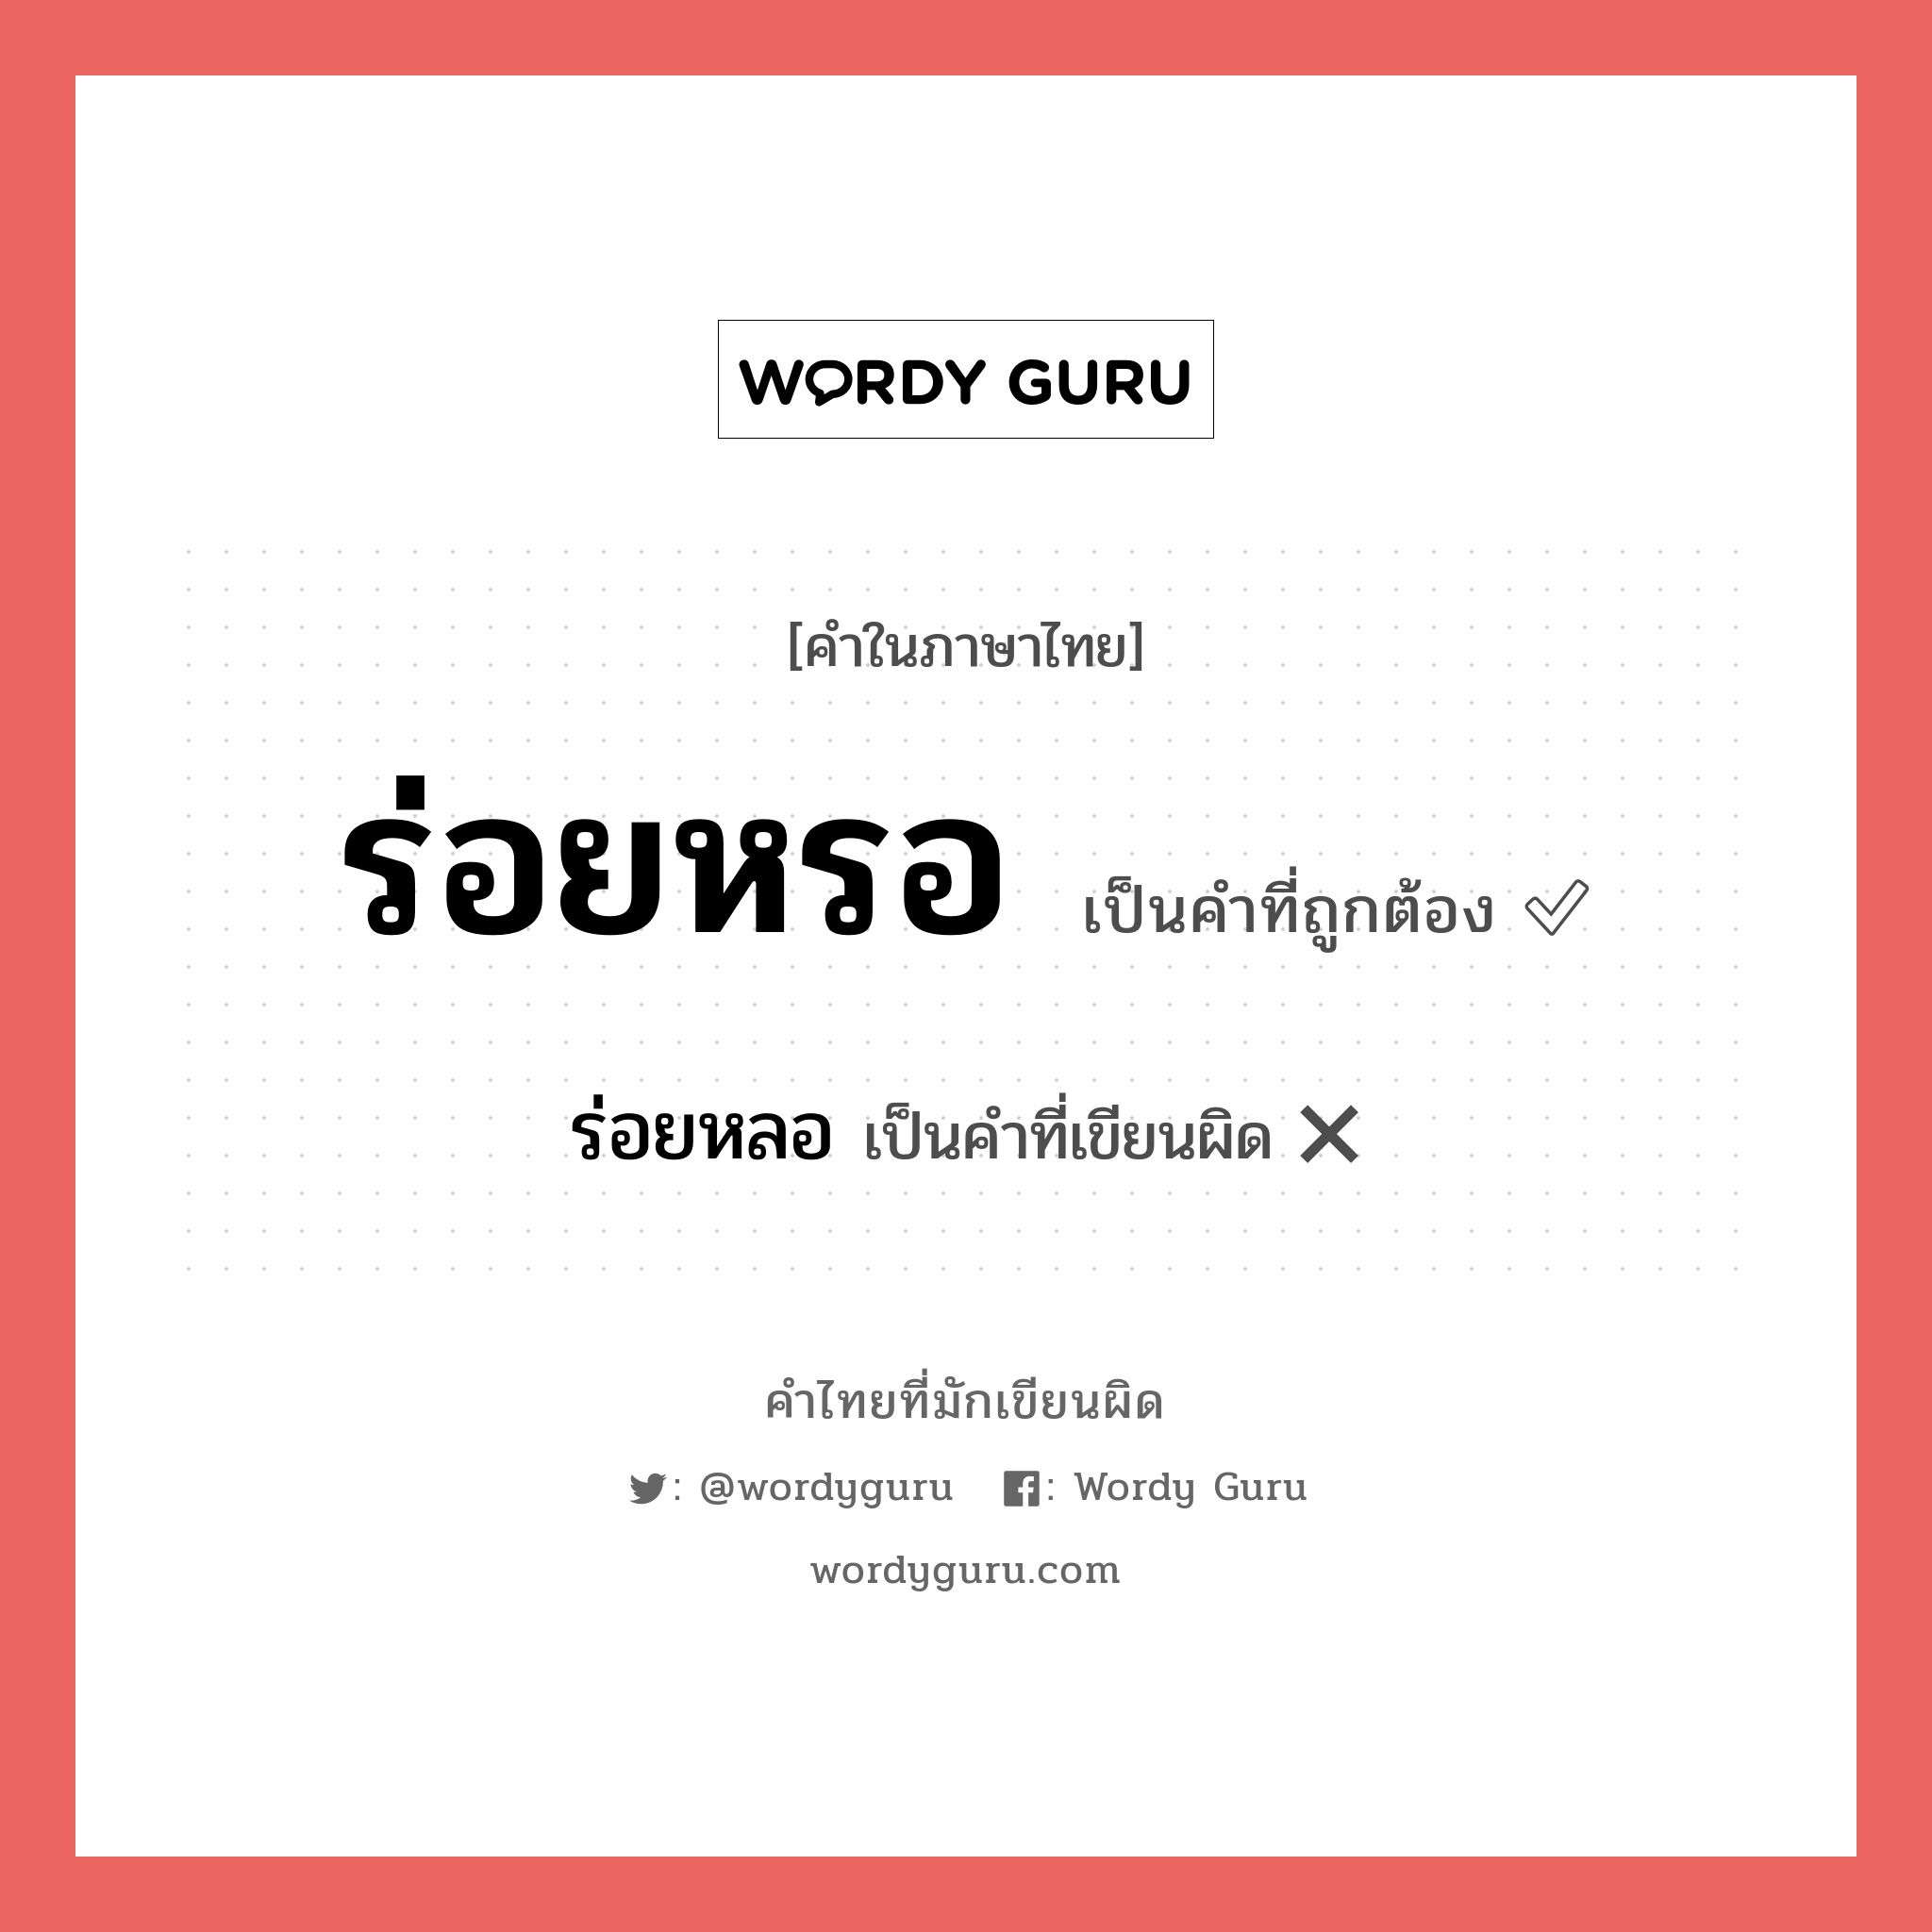 ร่อยหลอ หรือ ร่อยหรอ คำไหนเขียนถูก?, คำในภาษาไทยที่มักเขียนผิด ร่อยหลอ คำที่ผิด ❌ ร่อยหรอ